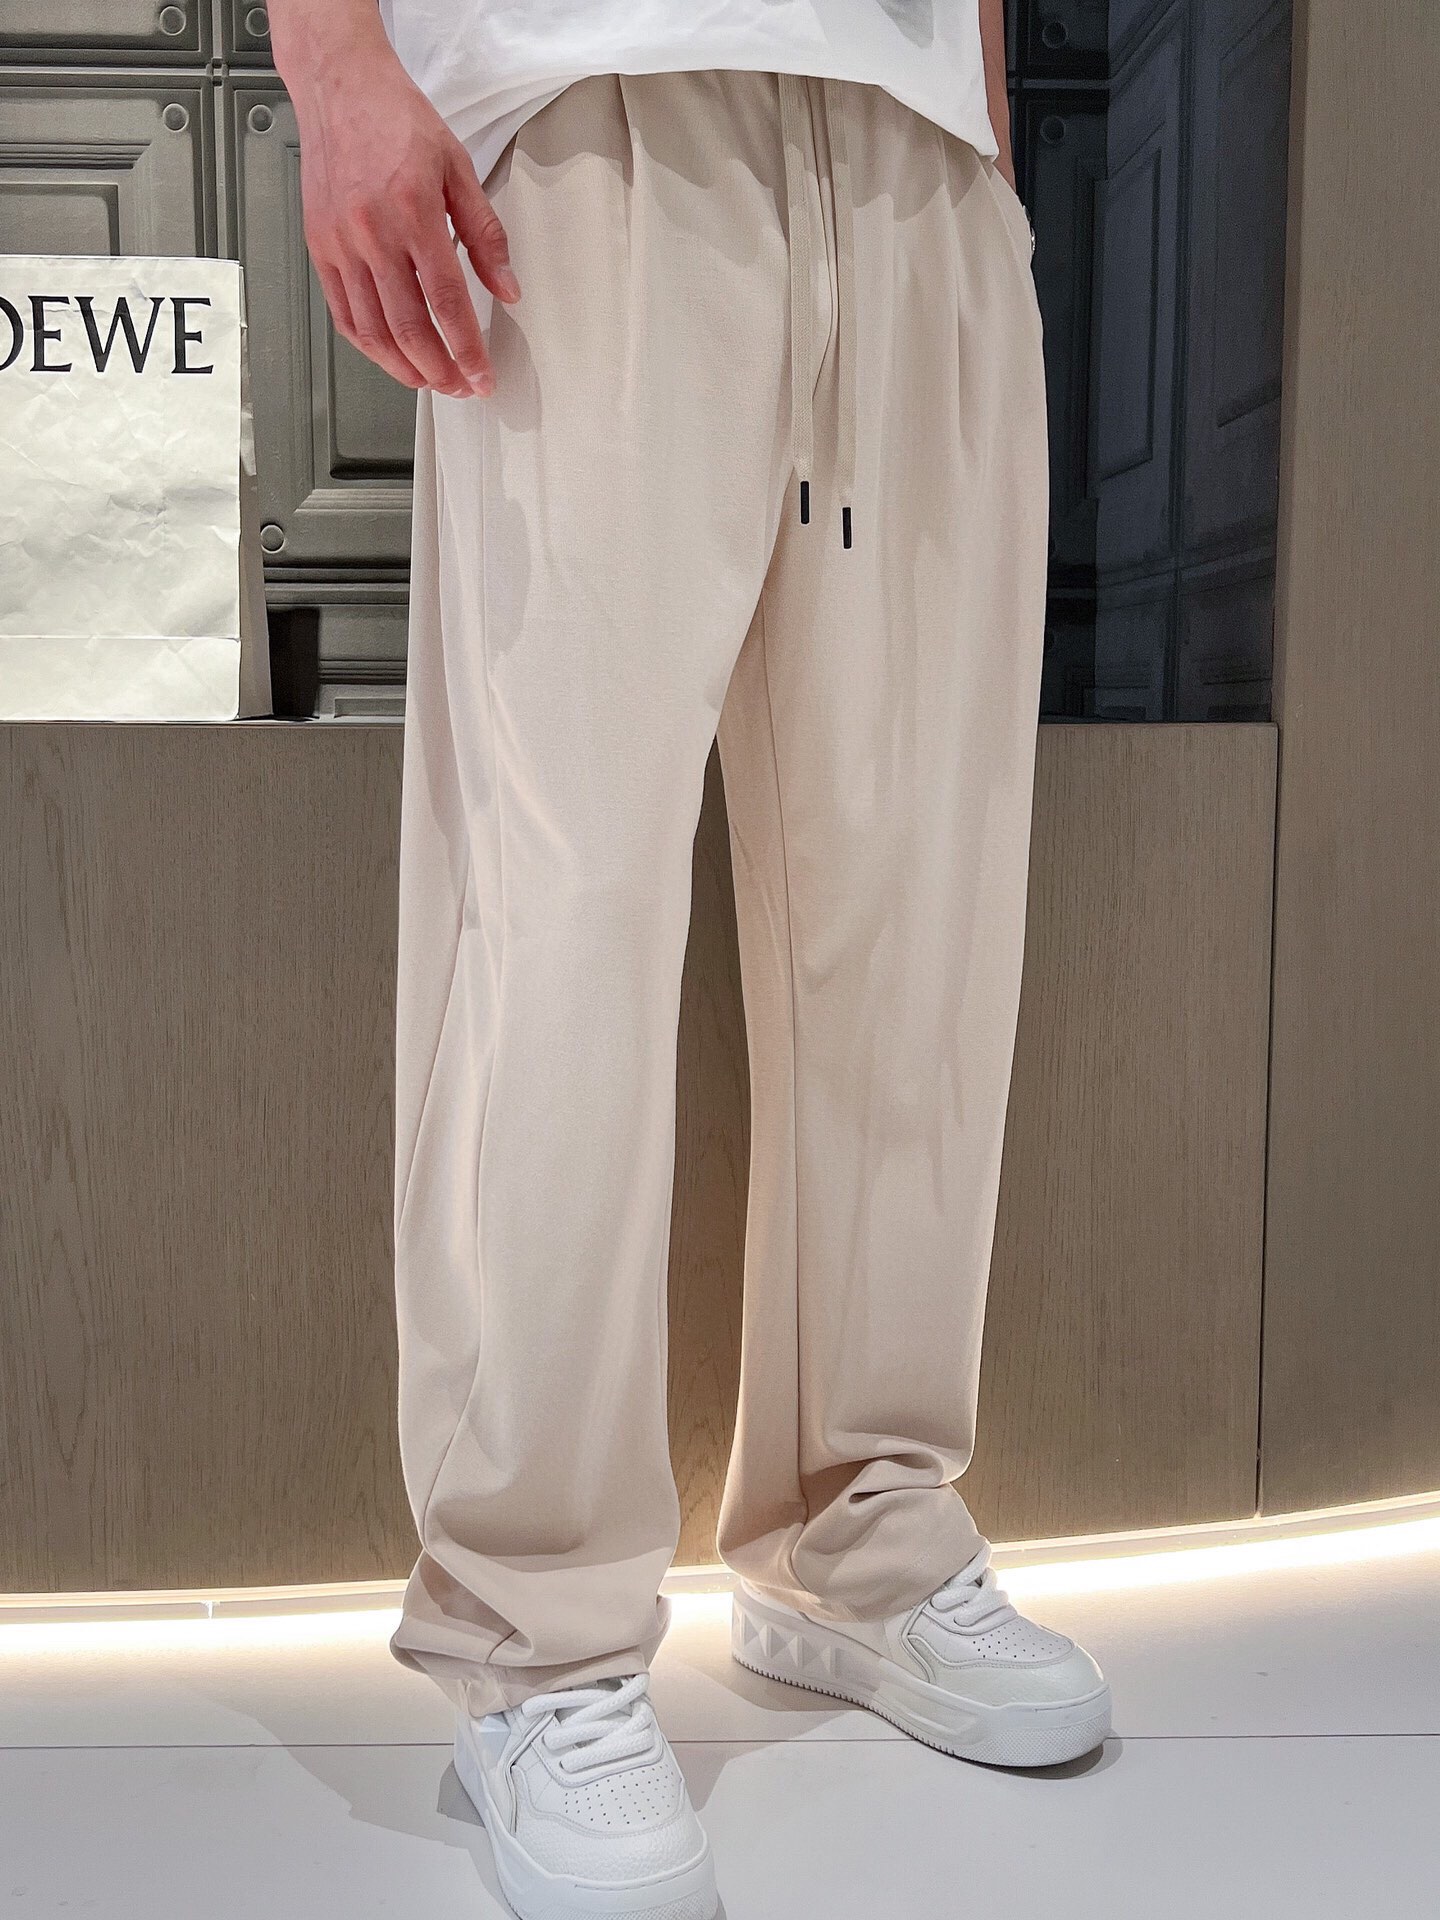 杰尼亚夏季新款休闲裤高级优质混纺面料触感柔软舒适具有垂感！肌理有着水洗工艺后的痕迹细腻柔软程度非同一般非